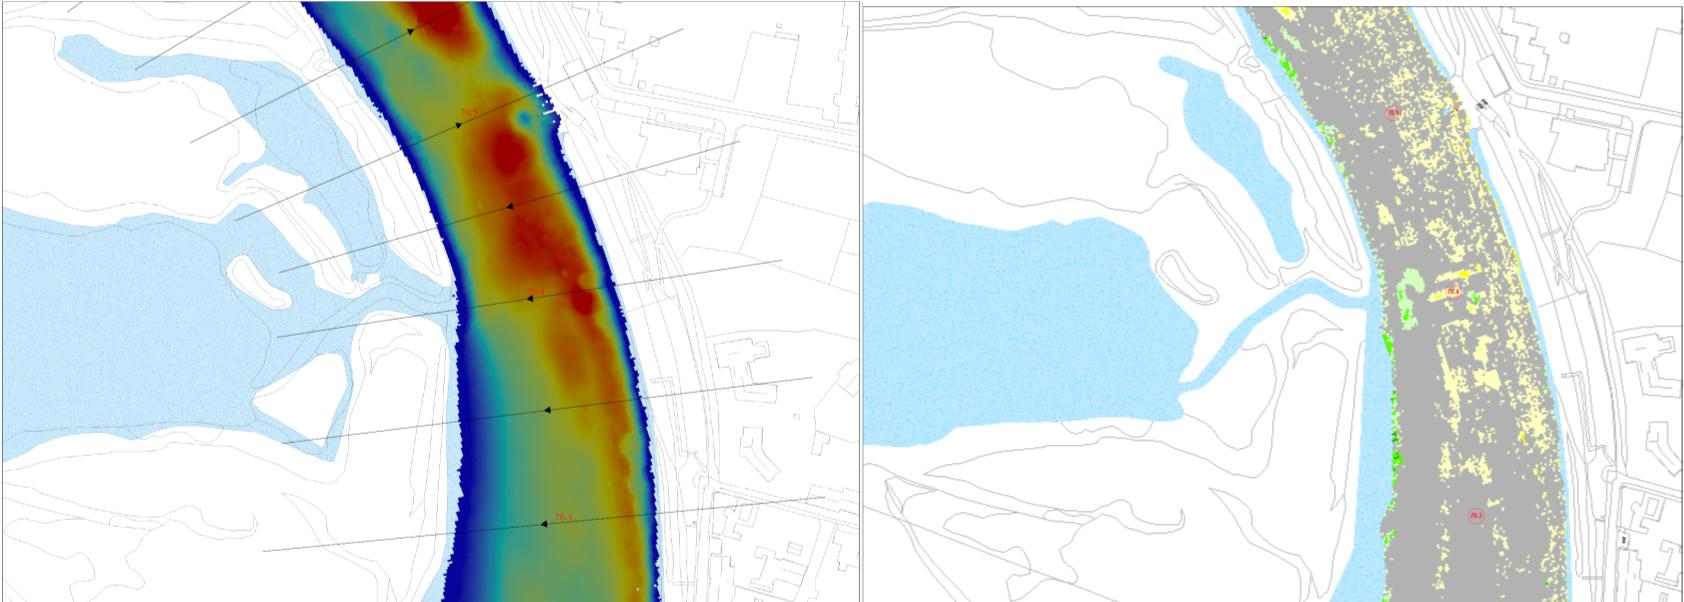 Bodemprofielen en steilrand In Figuur 3.10 links is de bodemligging in 2013 weergegeven. Dit is slechts een deel van het gehele oevertraject.